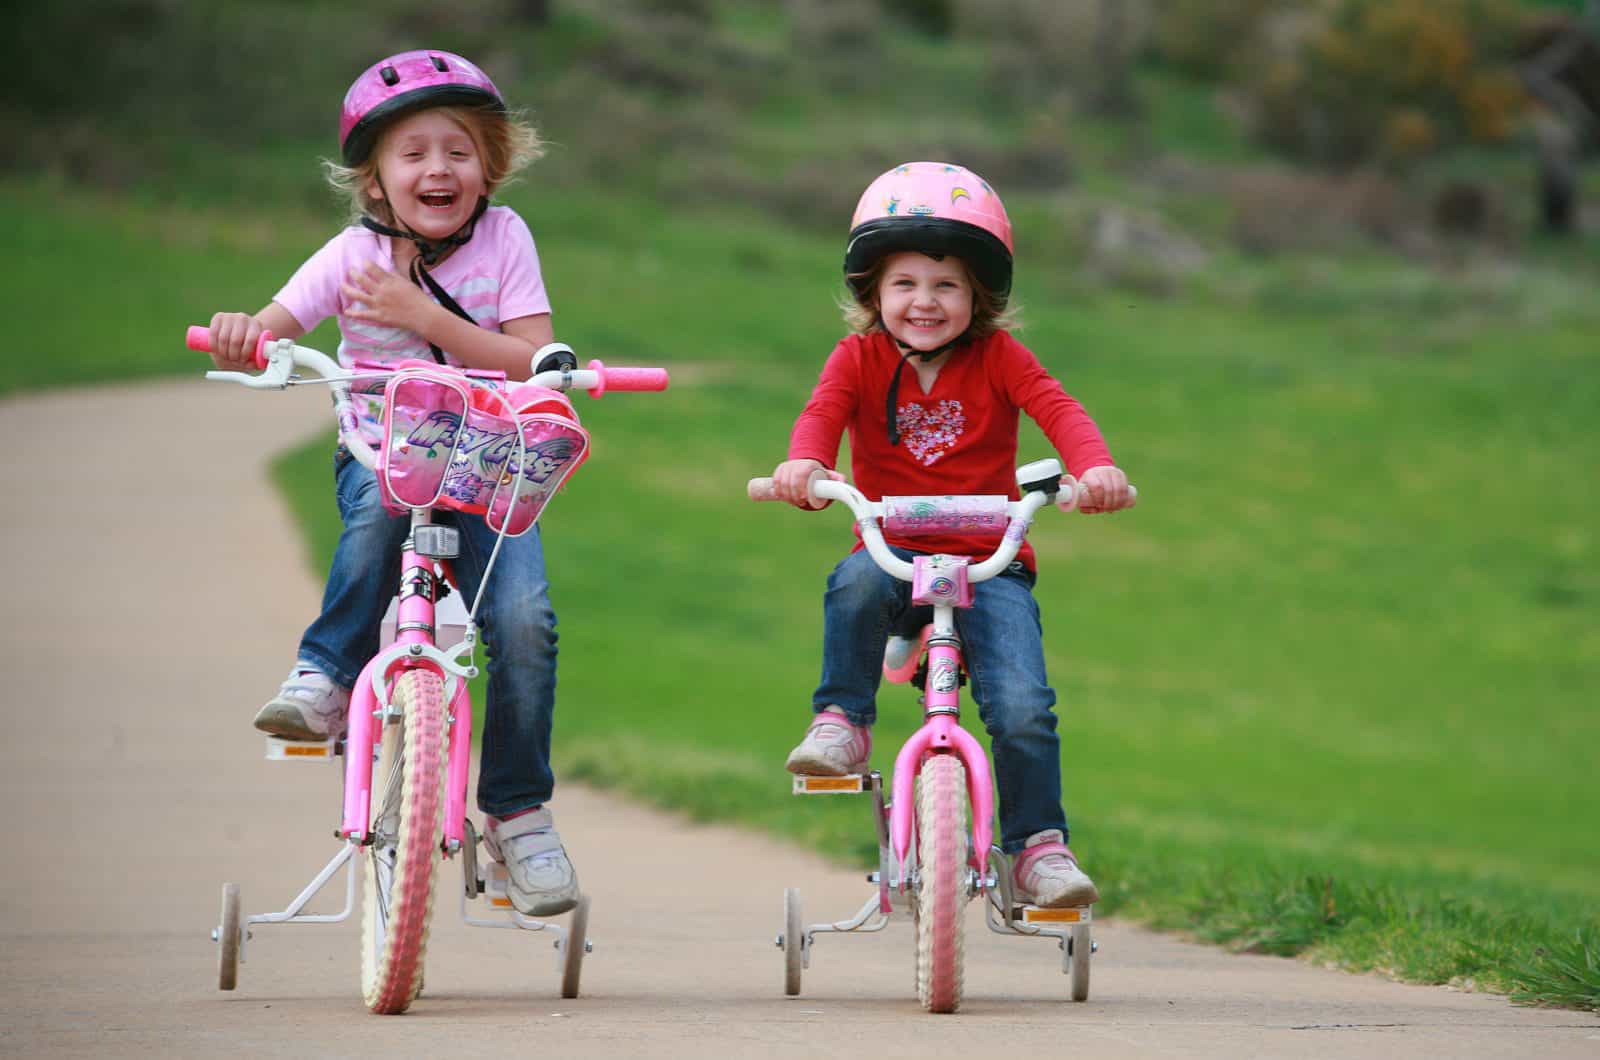 Kids on bikes